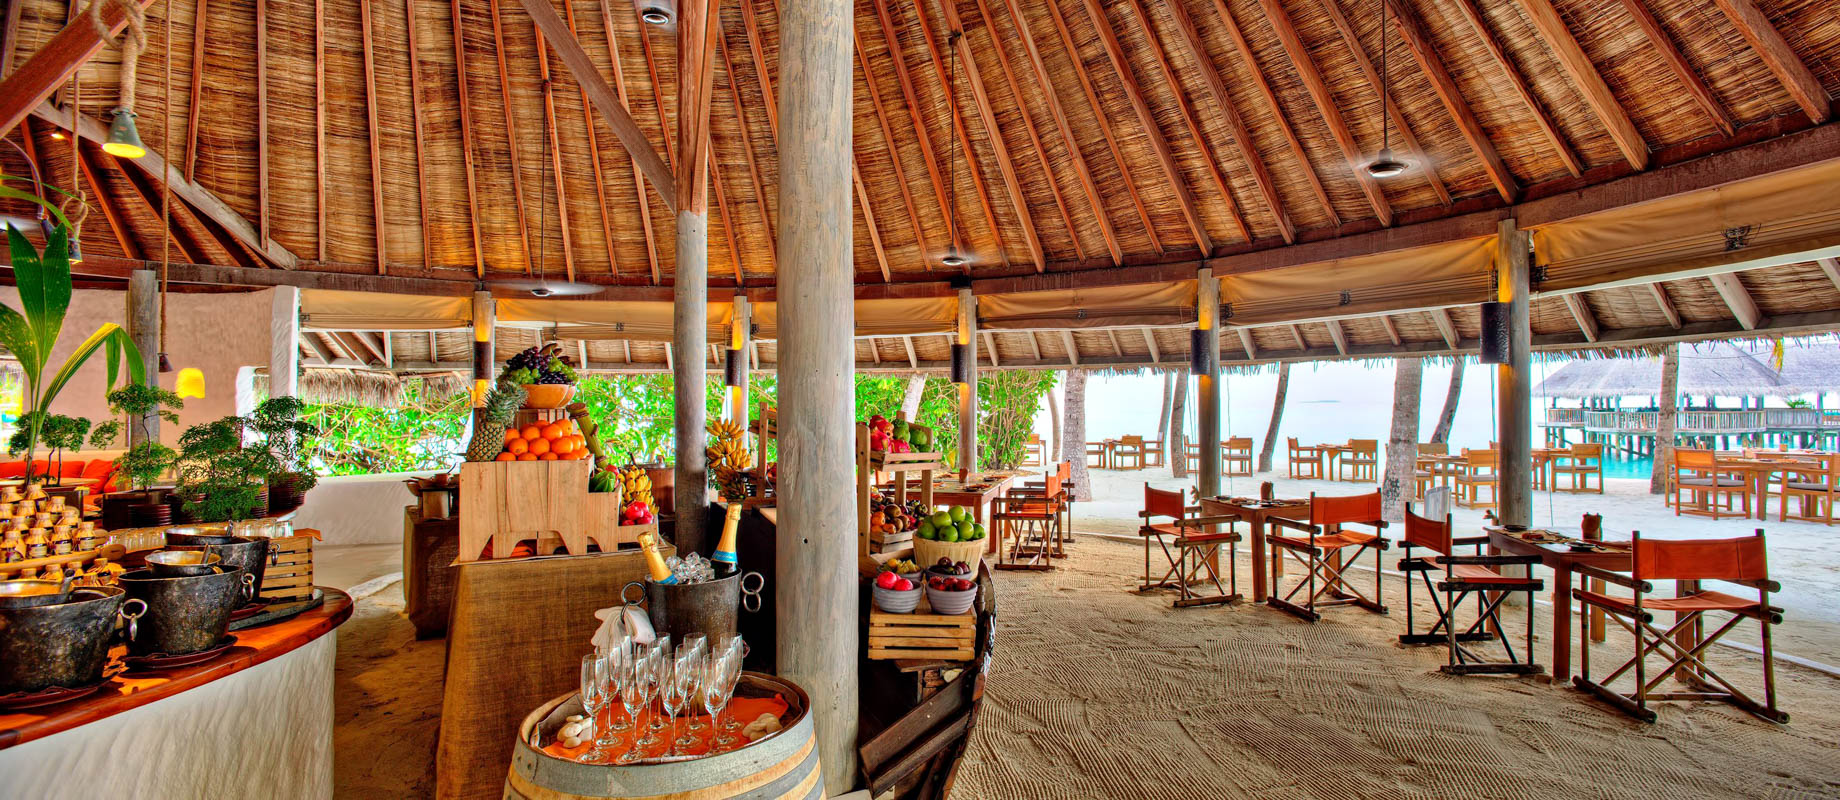 Gili Lankanfushi Resort – North Male Atoll, Maldives – Beachfront Restaurant